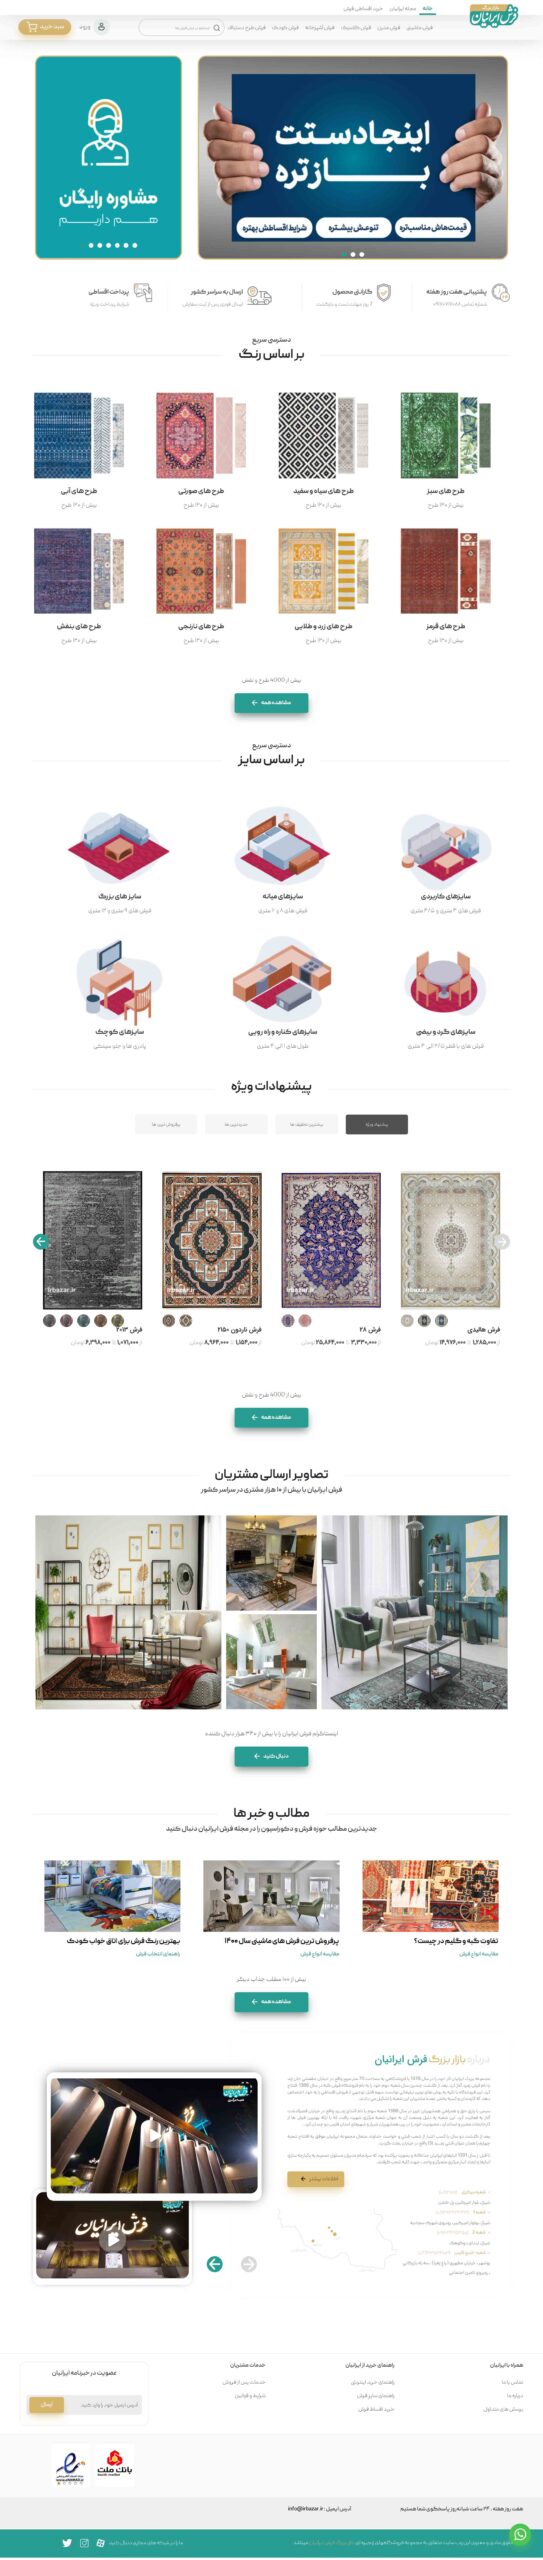 طراحی وبسایت فروشگاهی بازار فرش ایرانیان